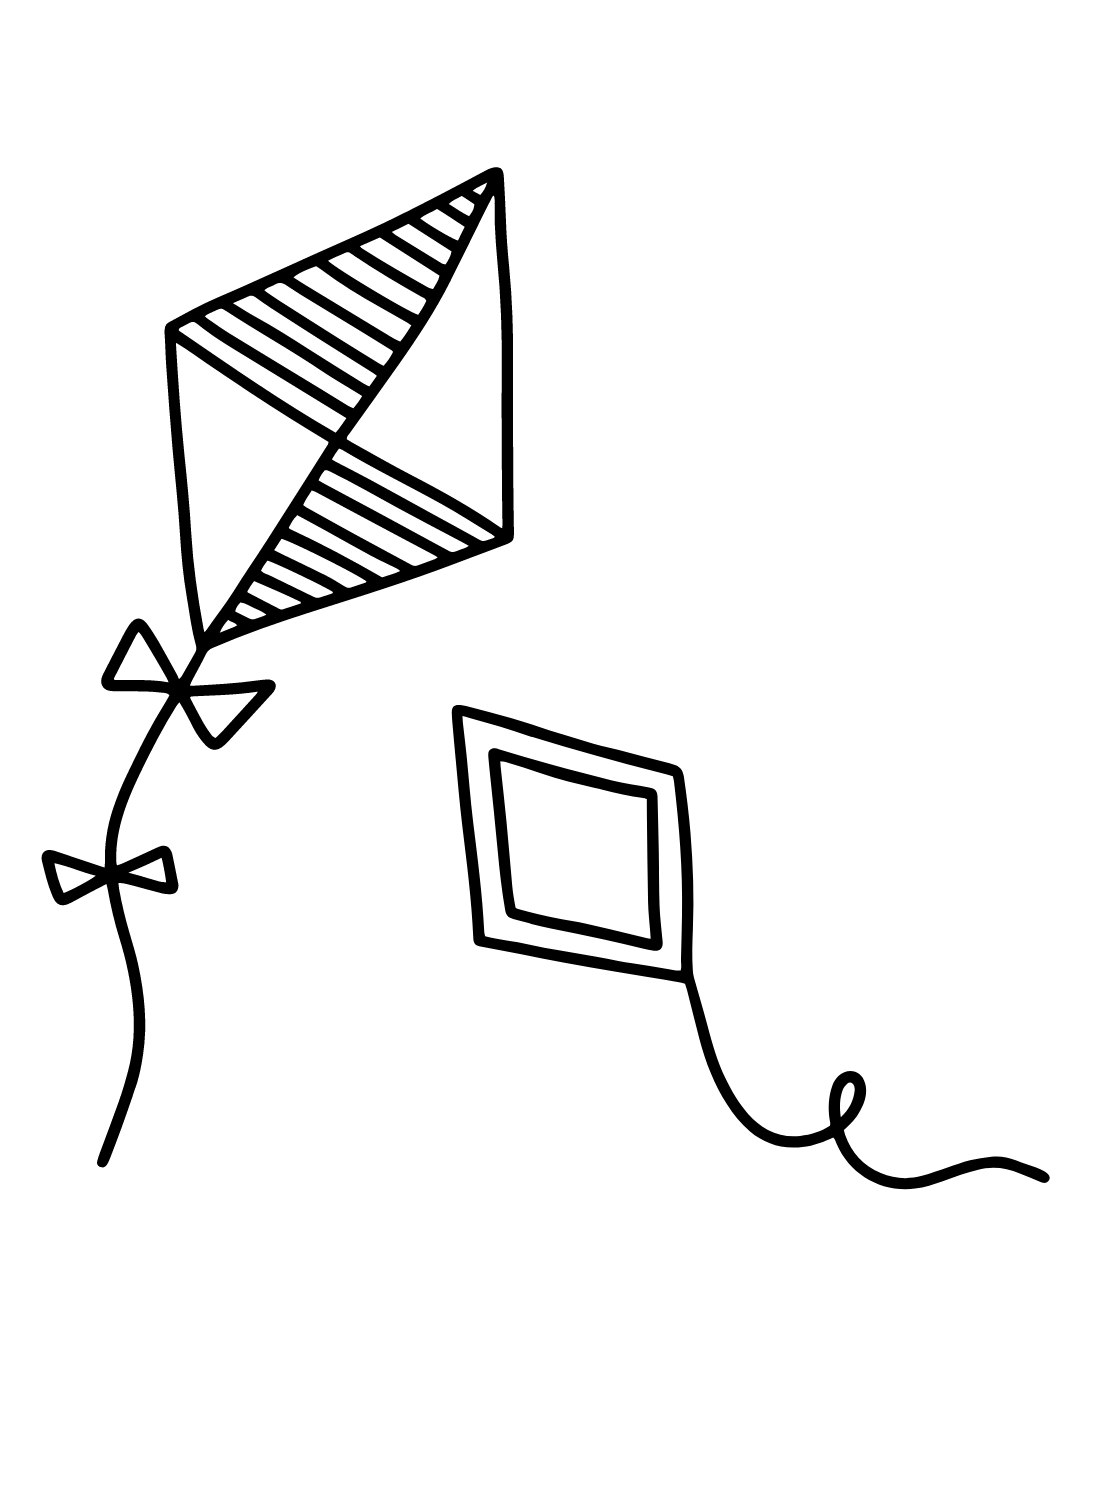 Draw Kite